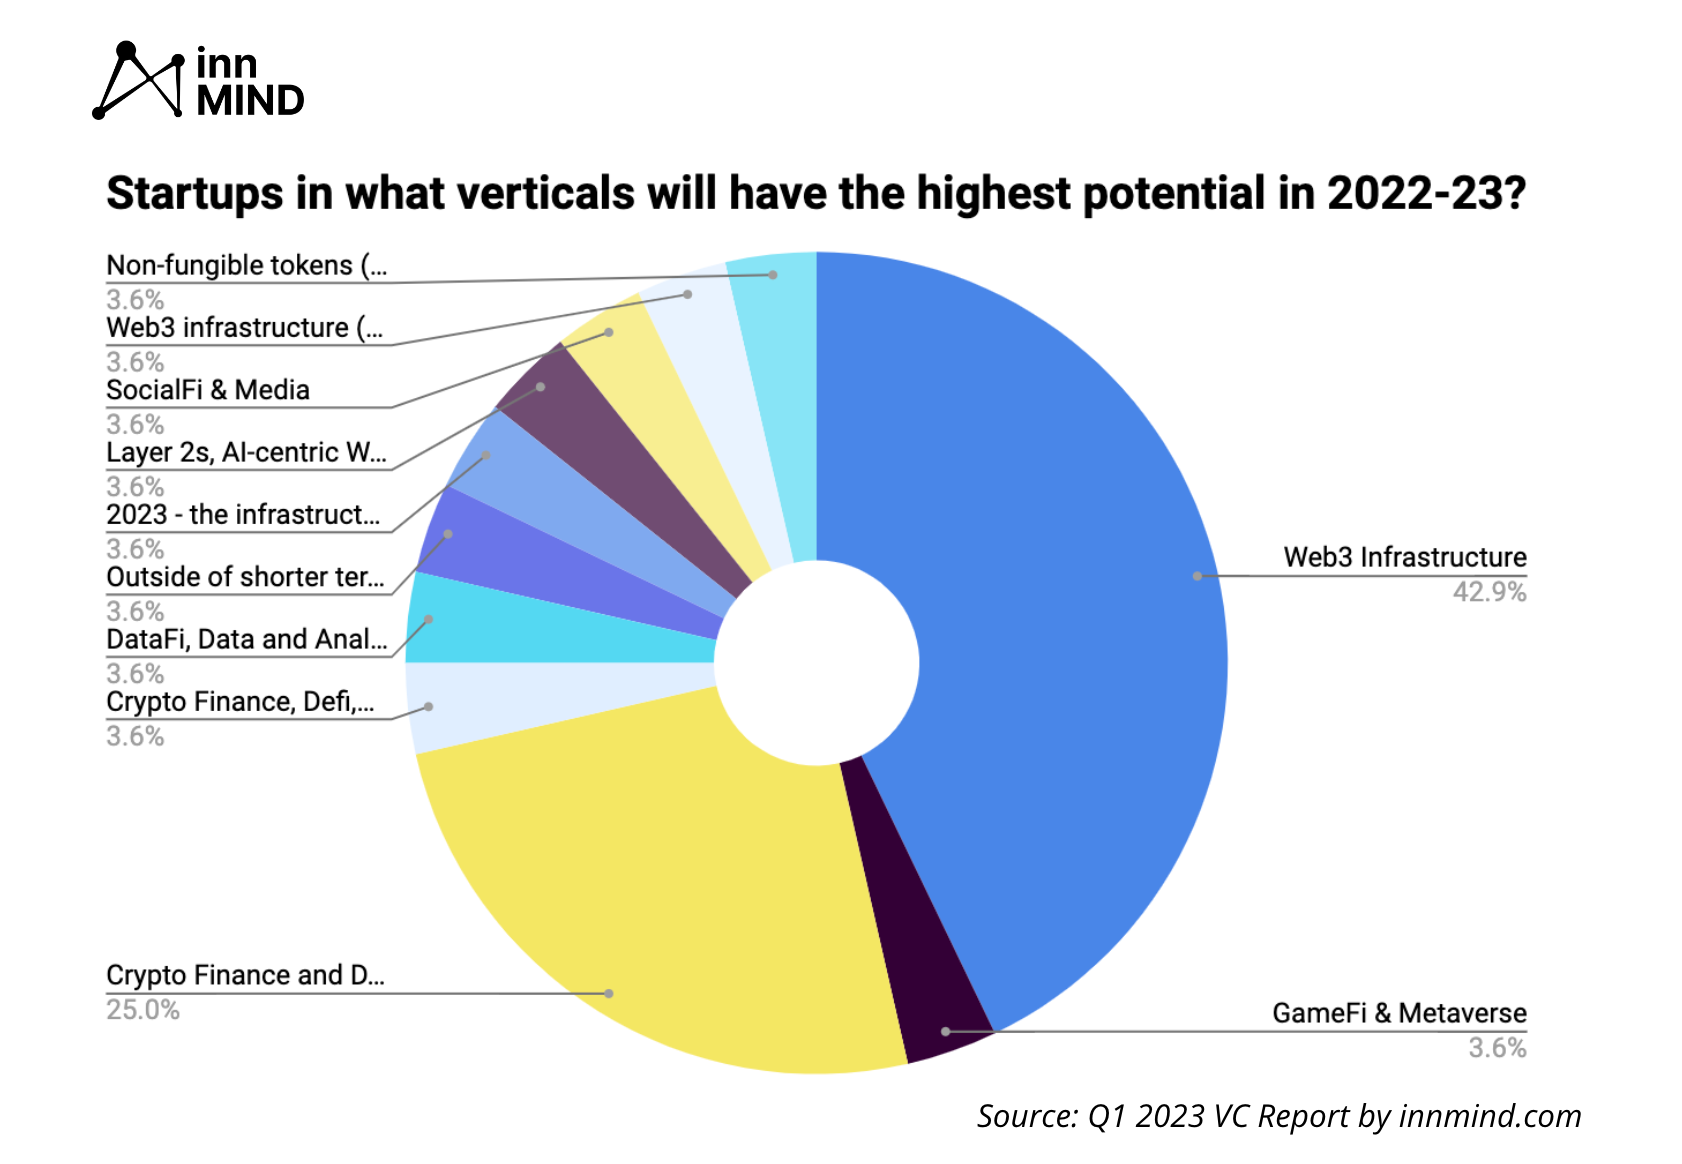 vertikal web3 teratas pada tahun 2023